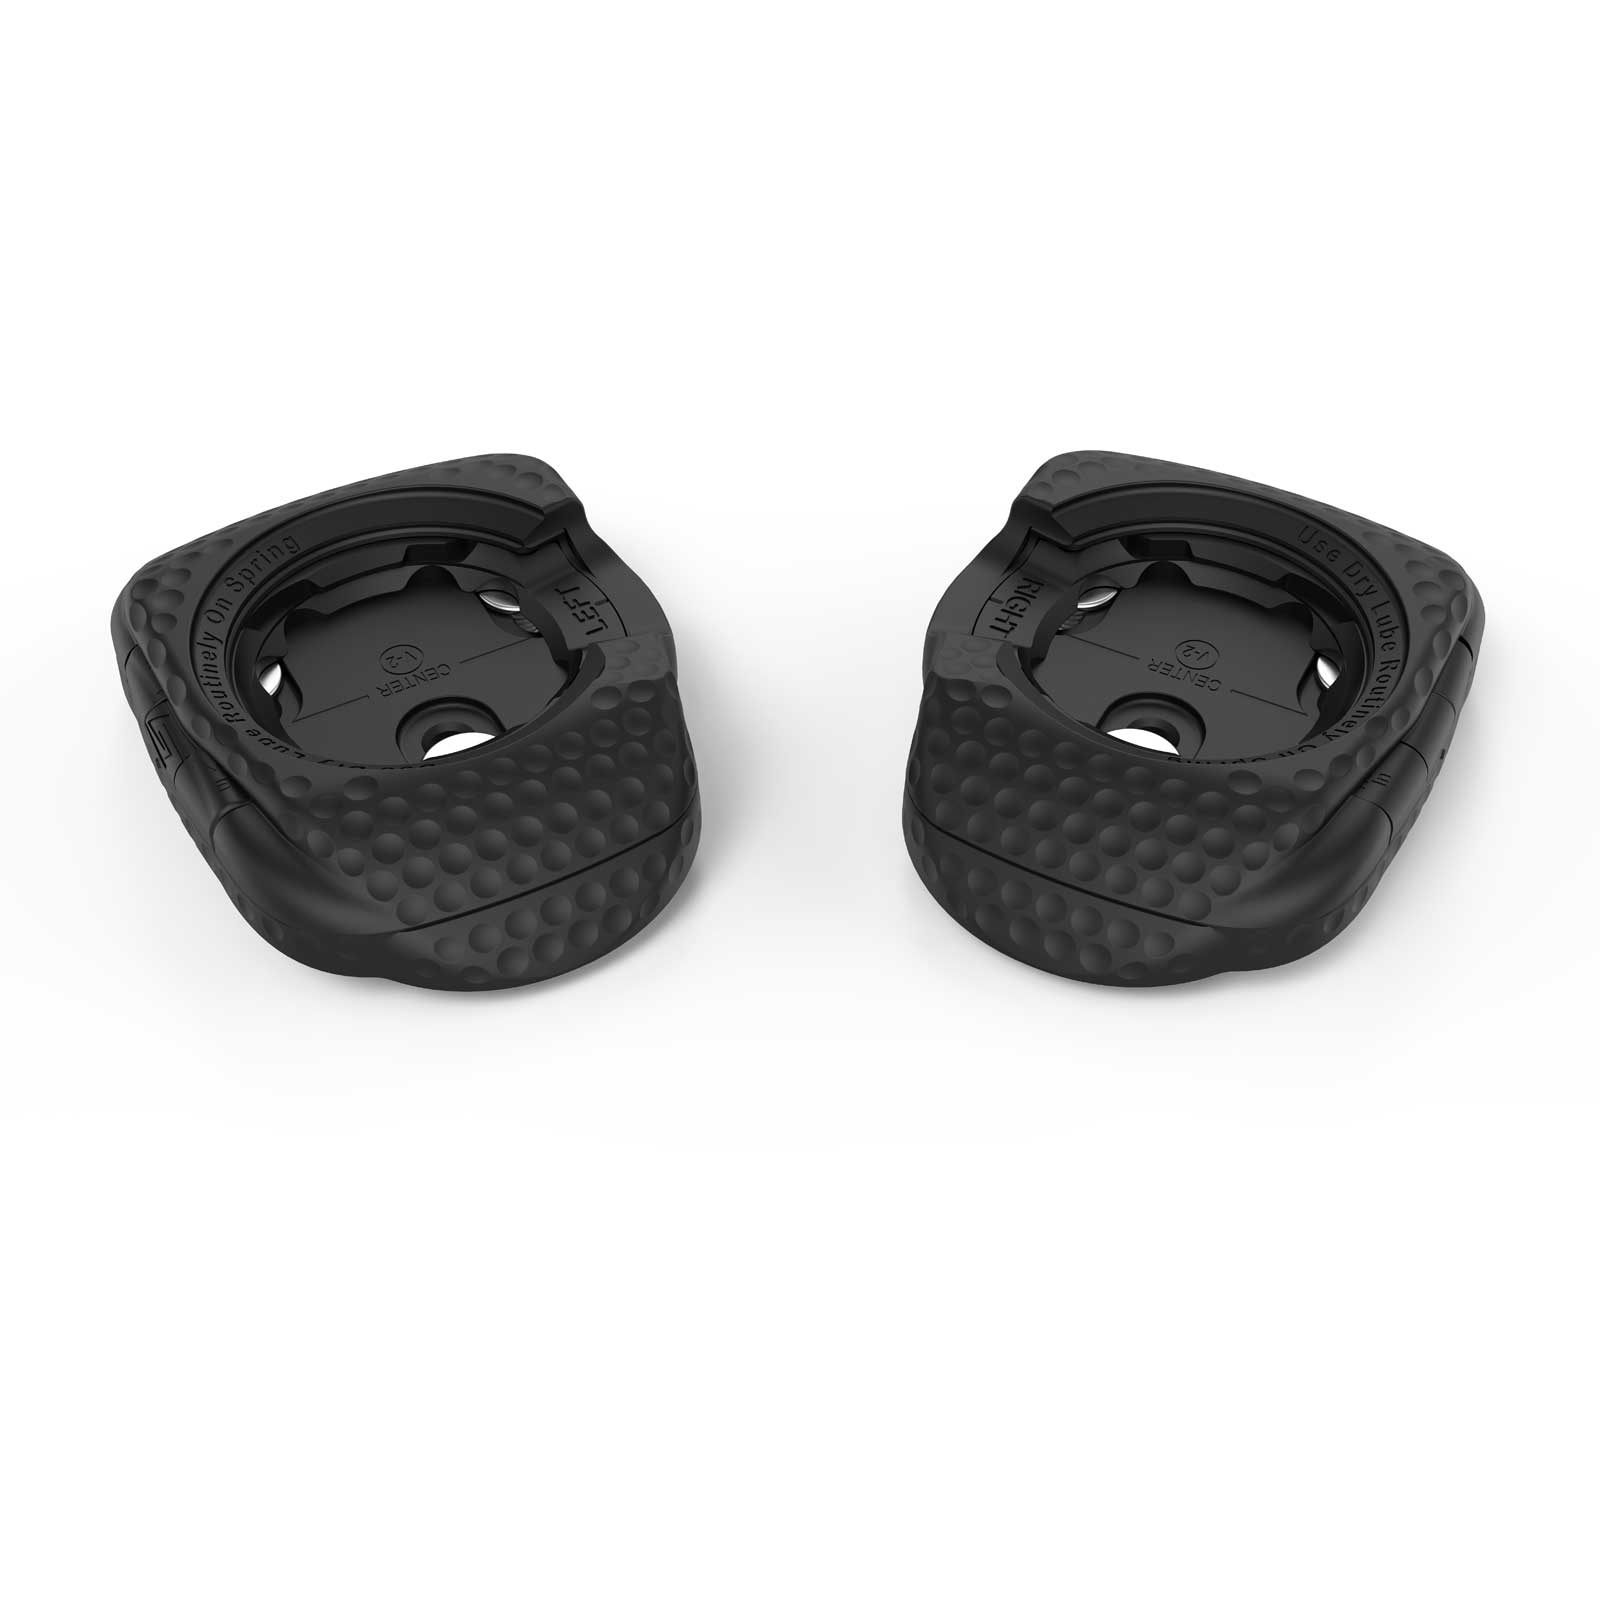 Productfoto van Wahoo SPEEDPLAY Standard Tension Cleats Pedaalplaten - zwart